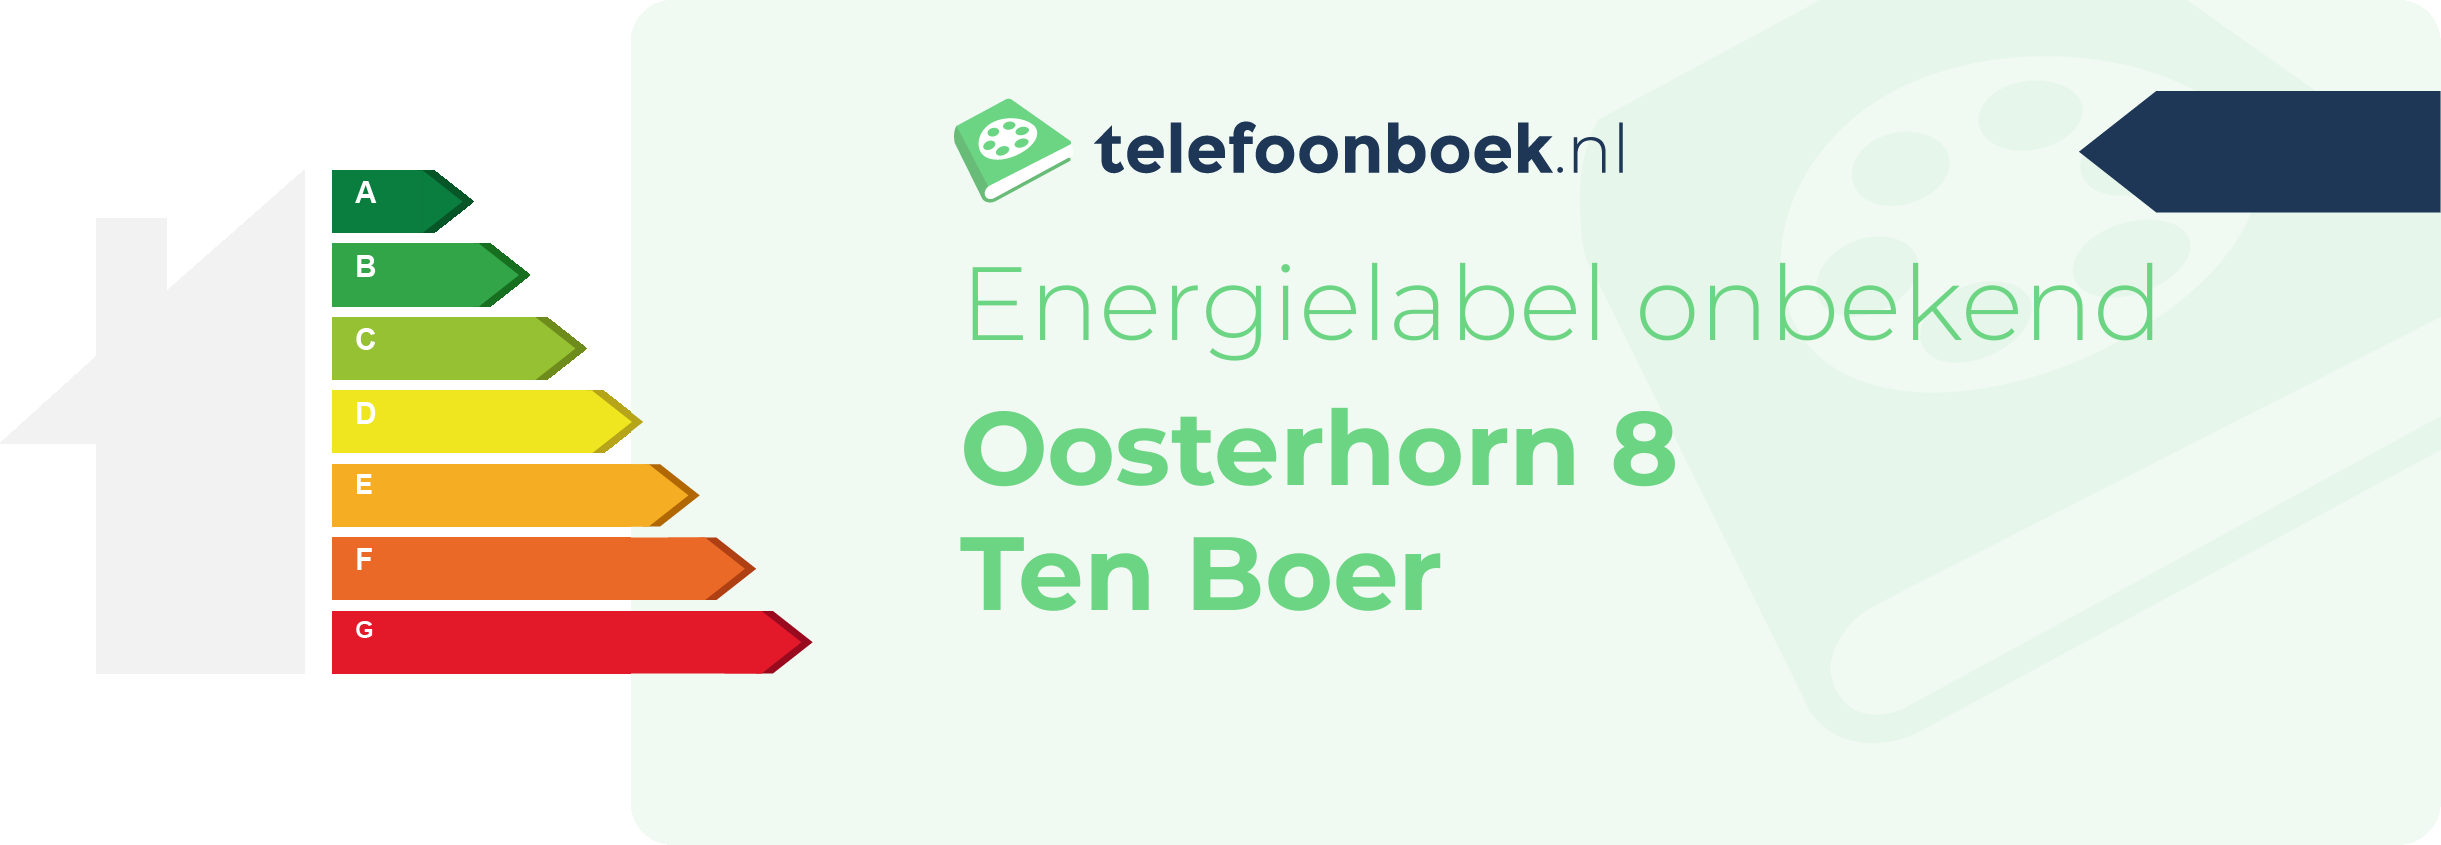 Energielabel Oosterhorn 8 Ten Boer